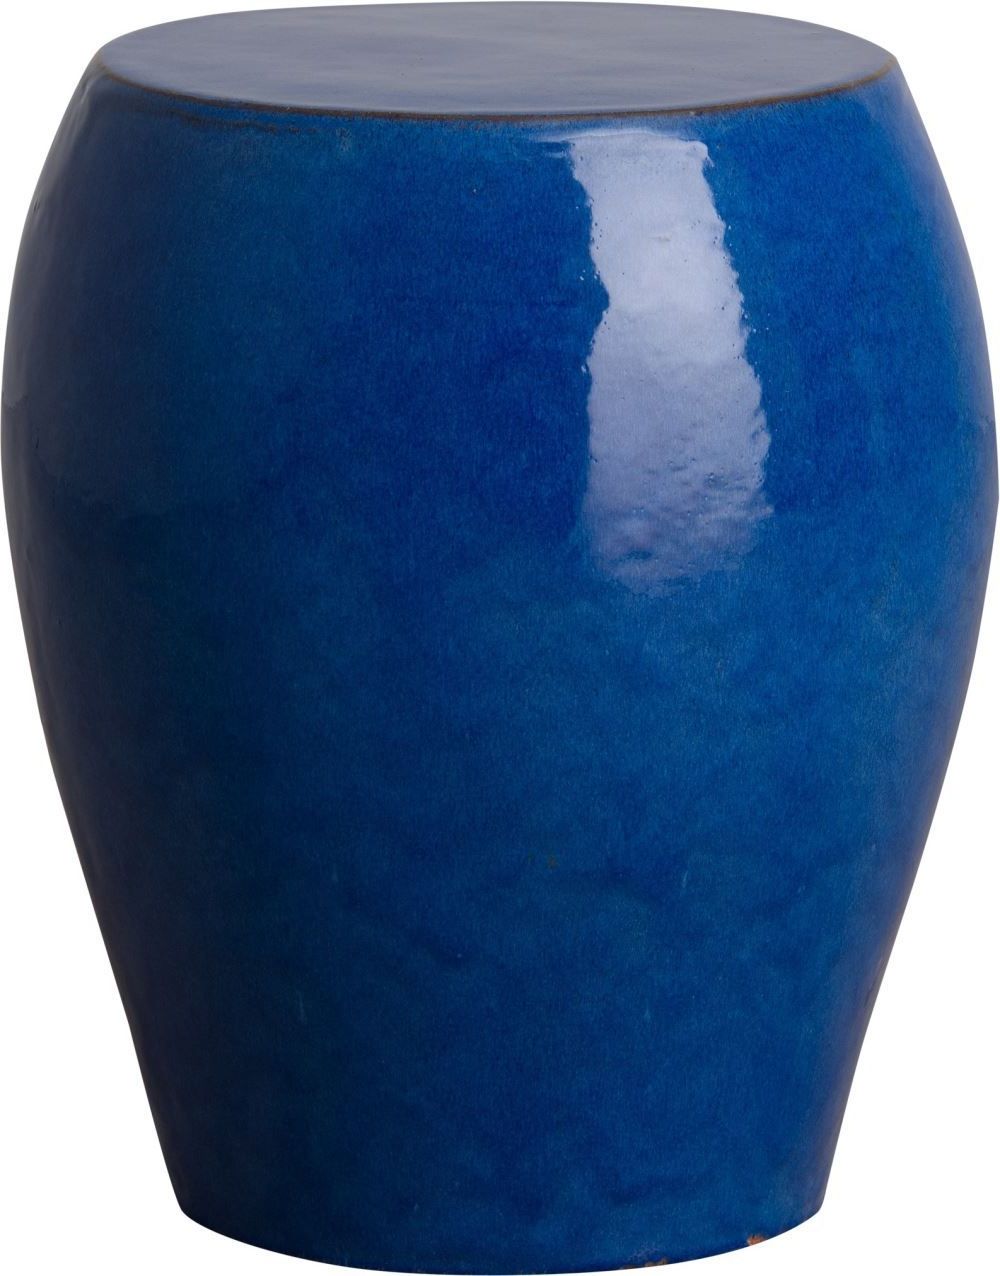 Aloysius Ceramic Garden Stools Inside Popular Seiji Garden Stool/table With A Blue Glaze – Em  (View 9 of 30)